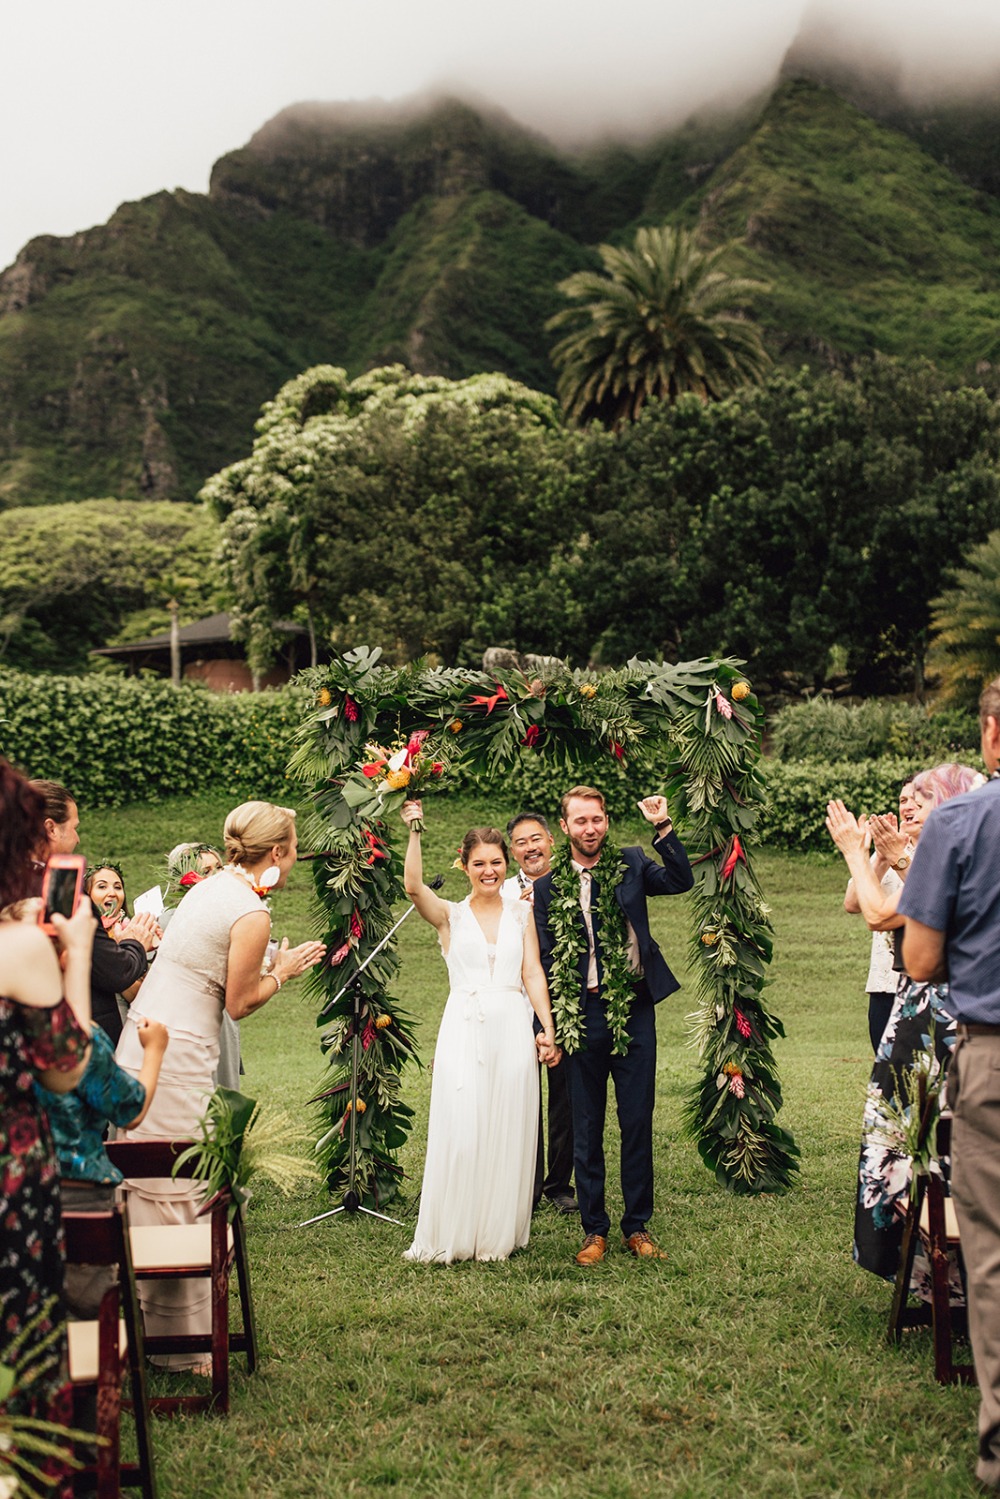 Tropical wedding in Hawaii